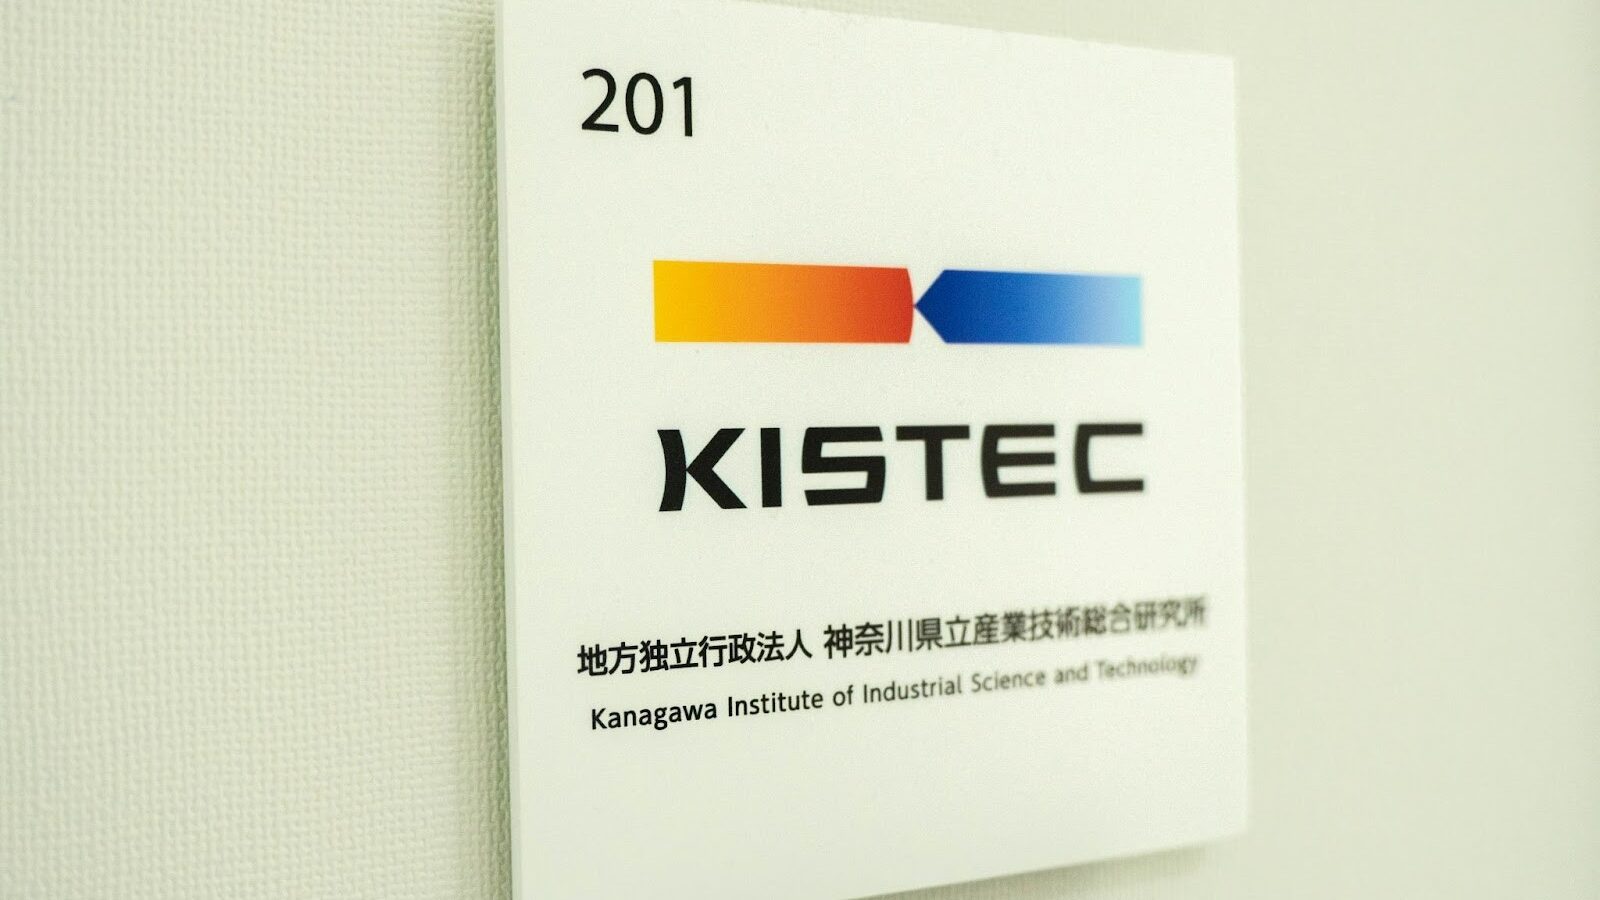 KISTEC神奈川県立産業技術総合研究機関